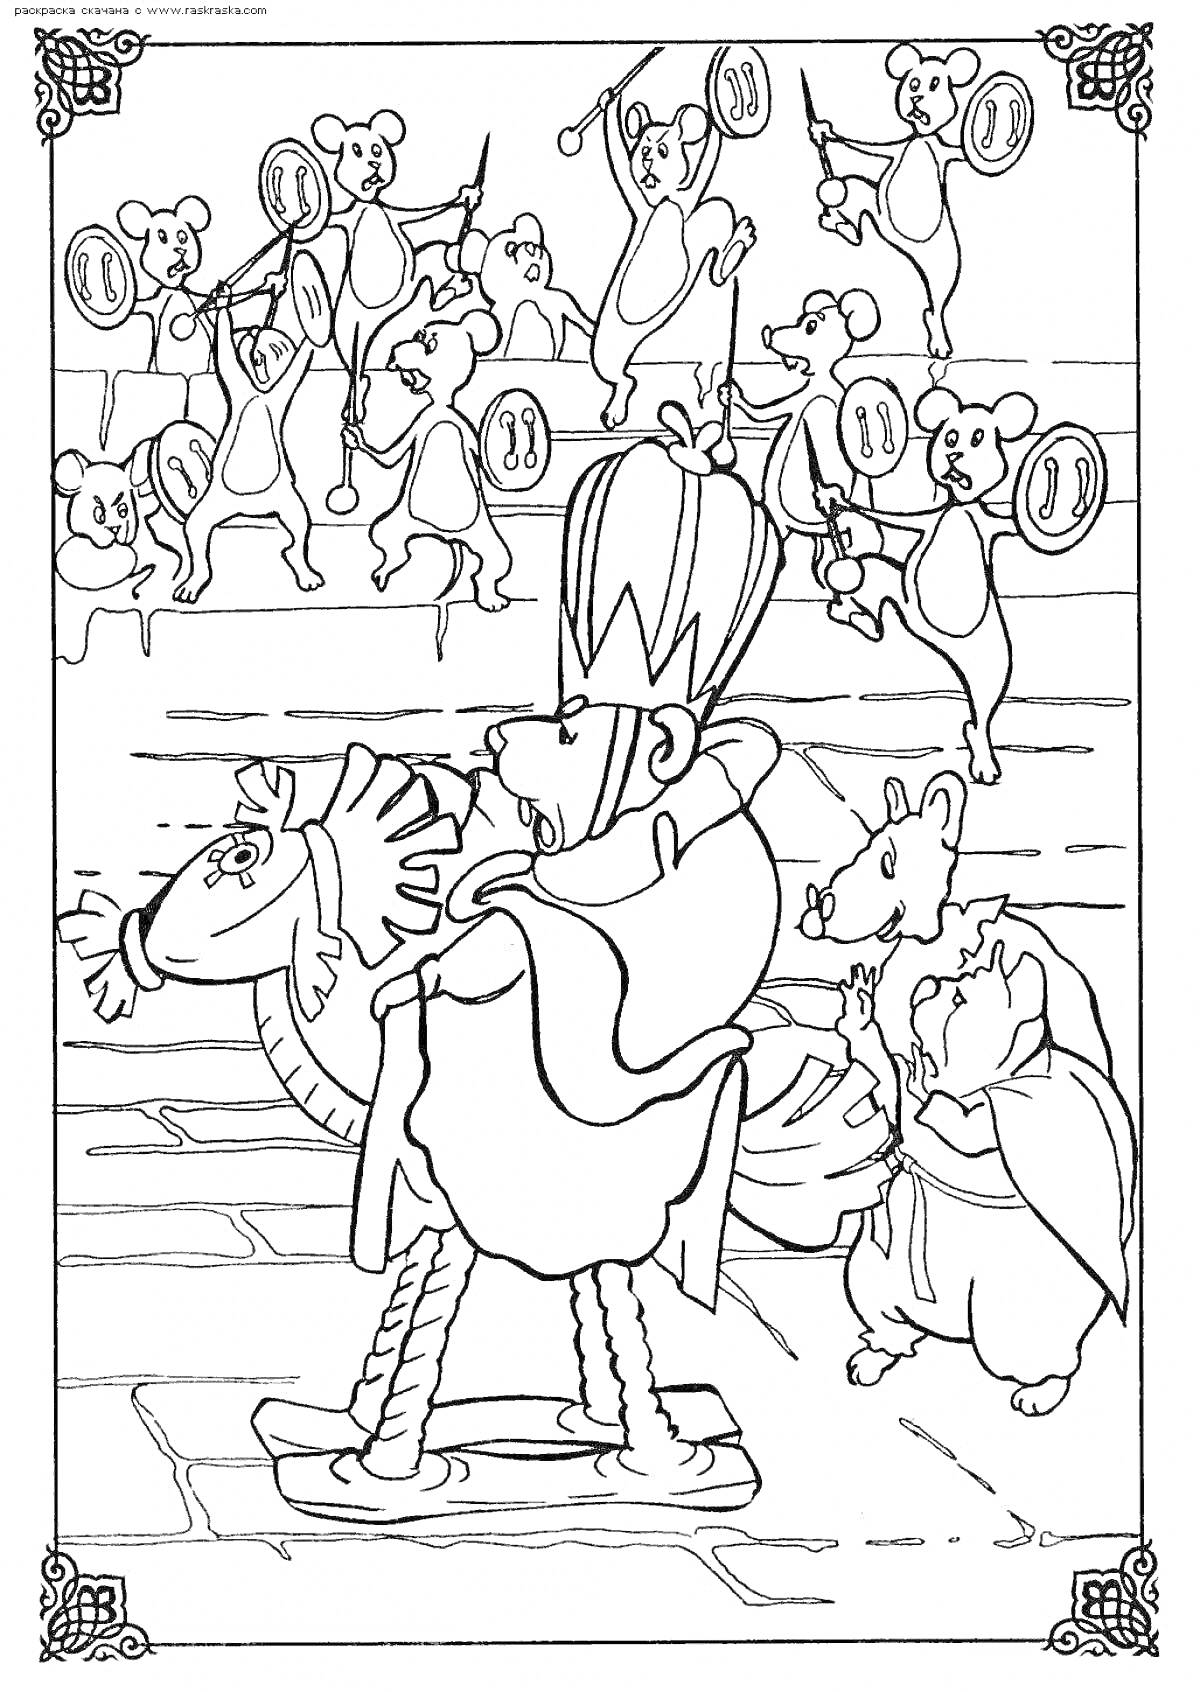 Раскраска Мышиный король с армией мышей с оружием и щитами